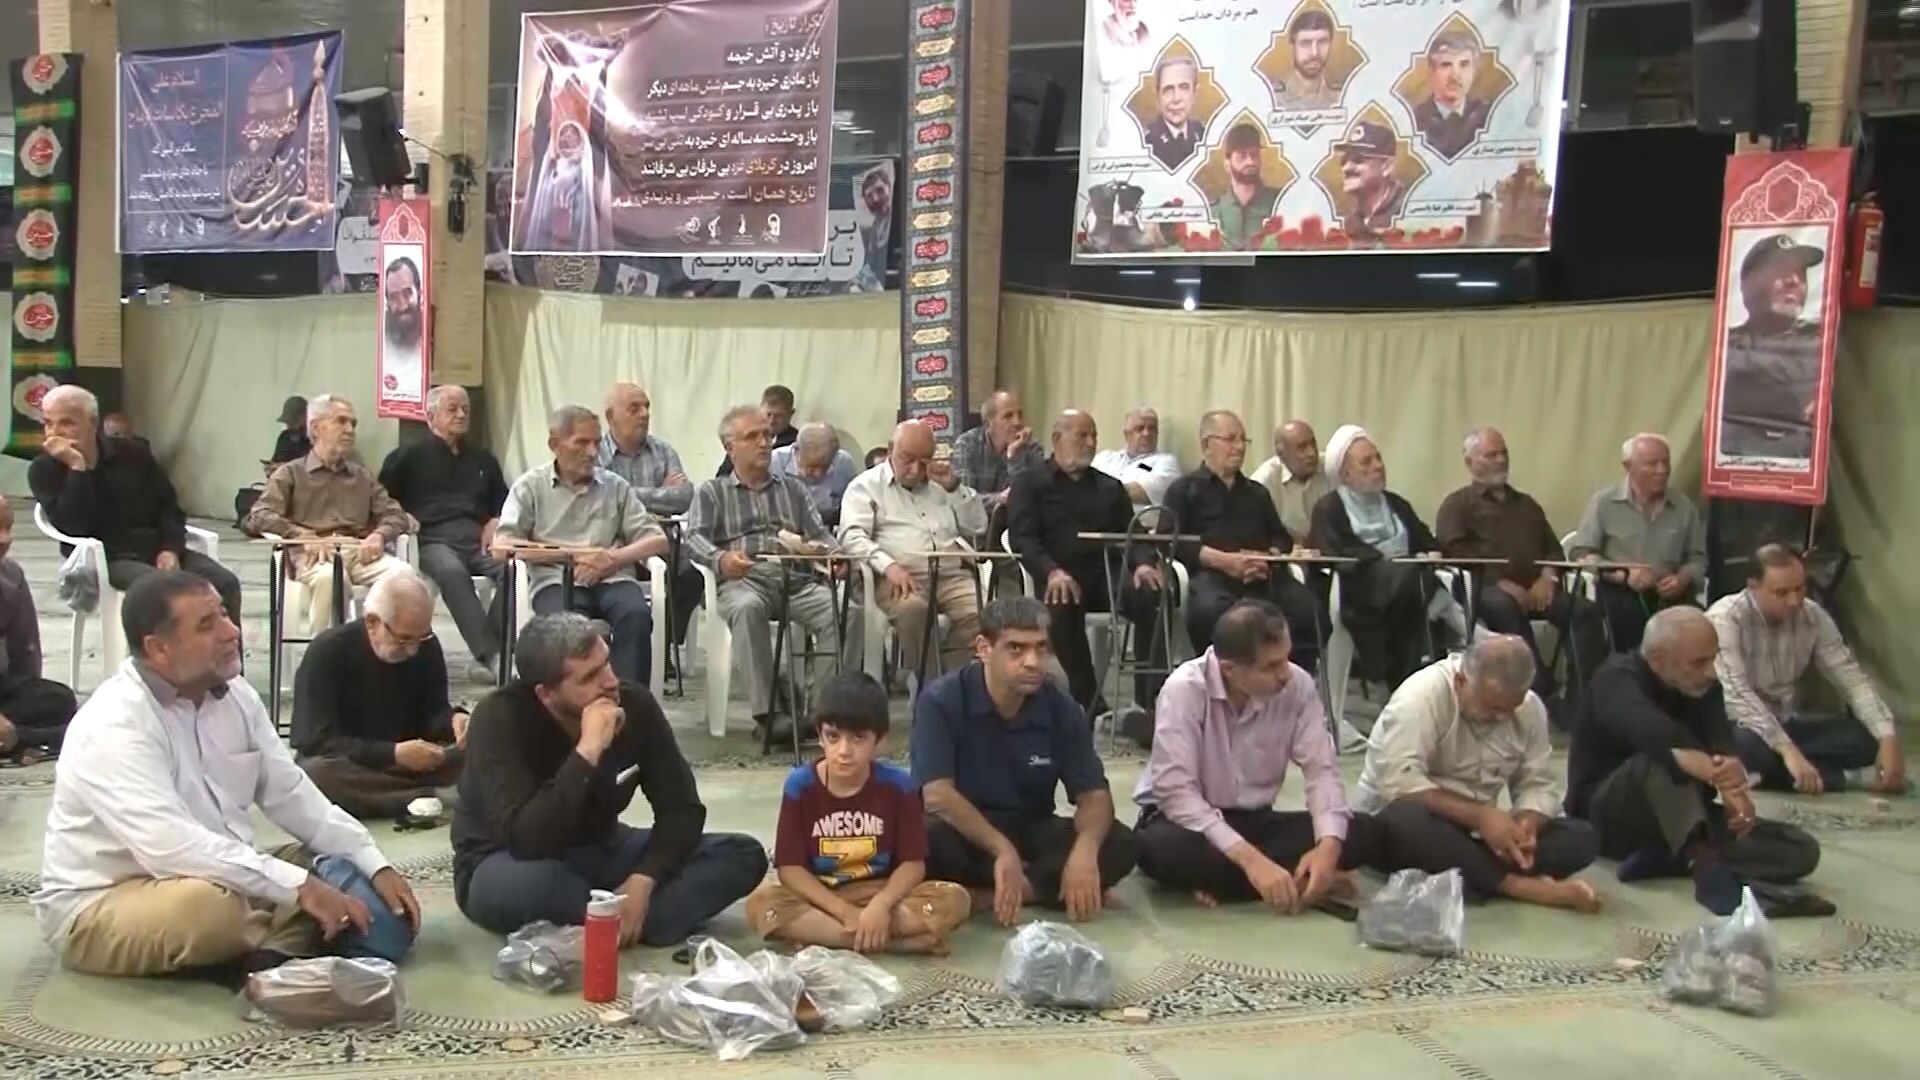 برگزاری آیین گرامیداشت شهادت شهید اسماعیل هنیه در شاهین شهر